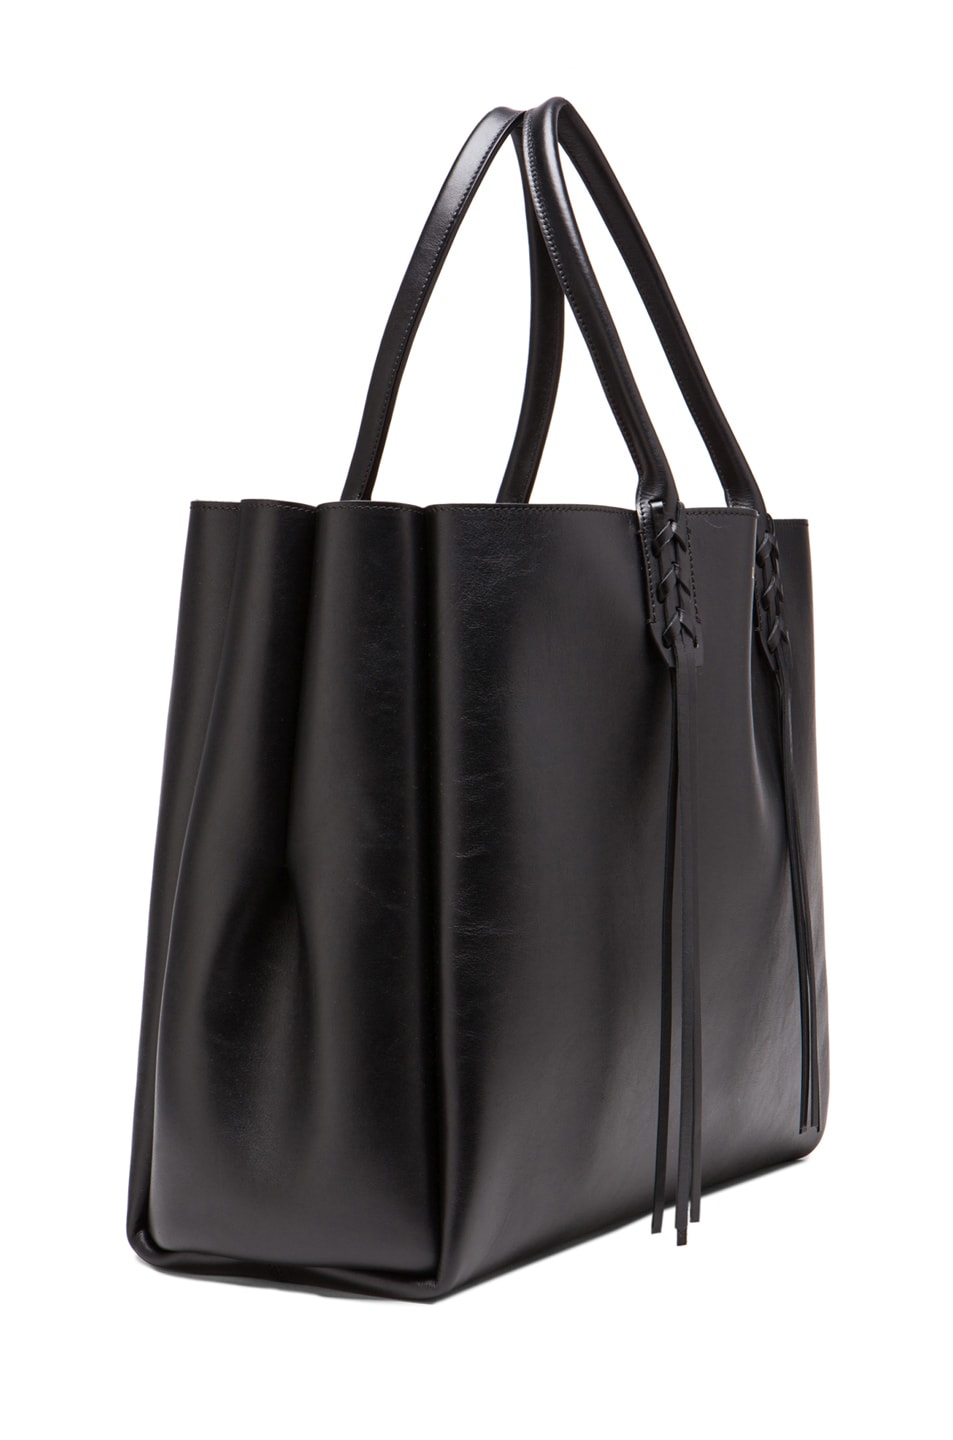 Lanvin Shopper Bag with Fringe Detail in Black | FWRD